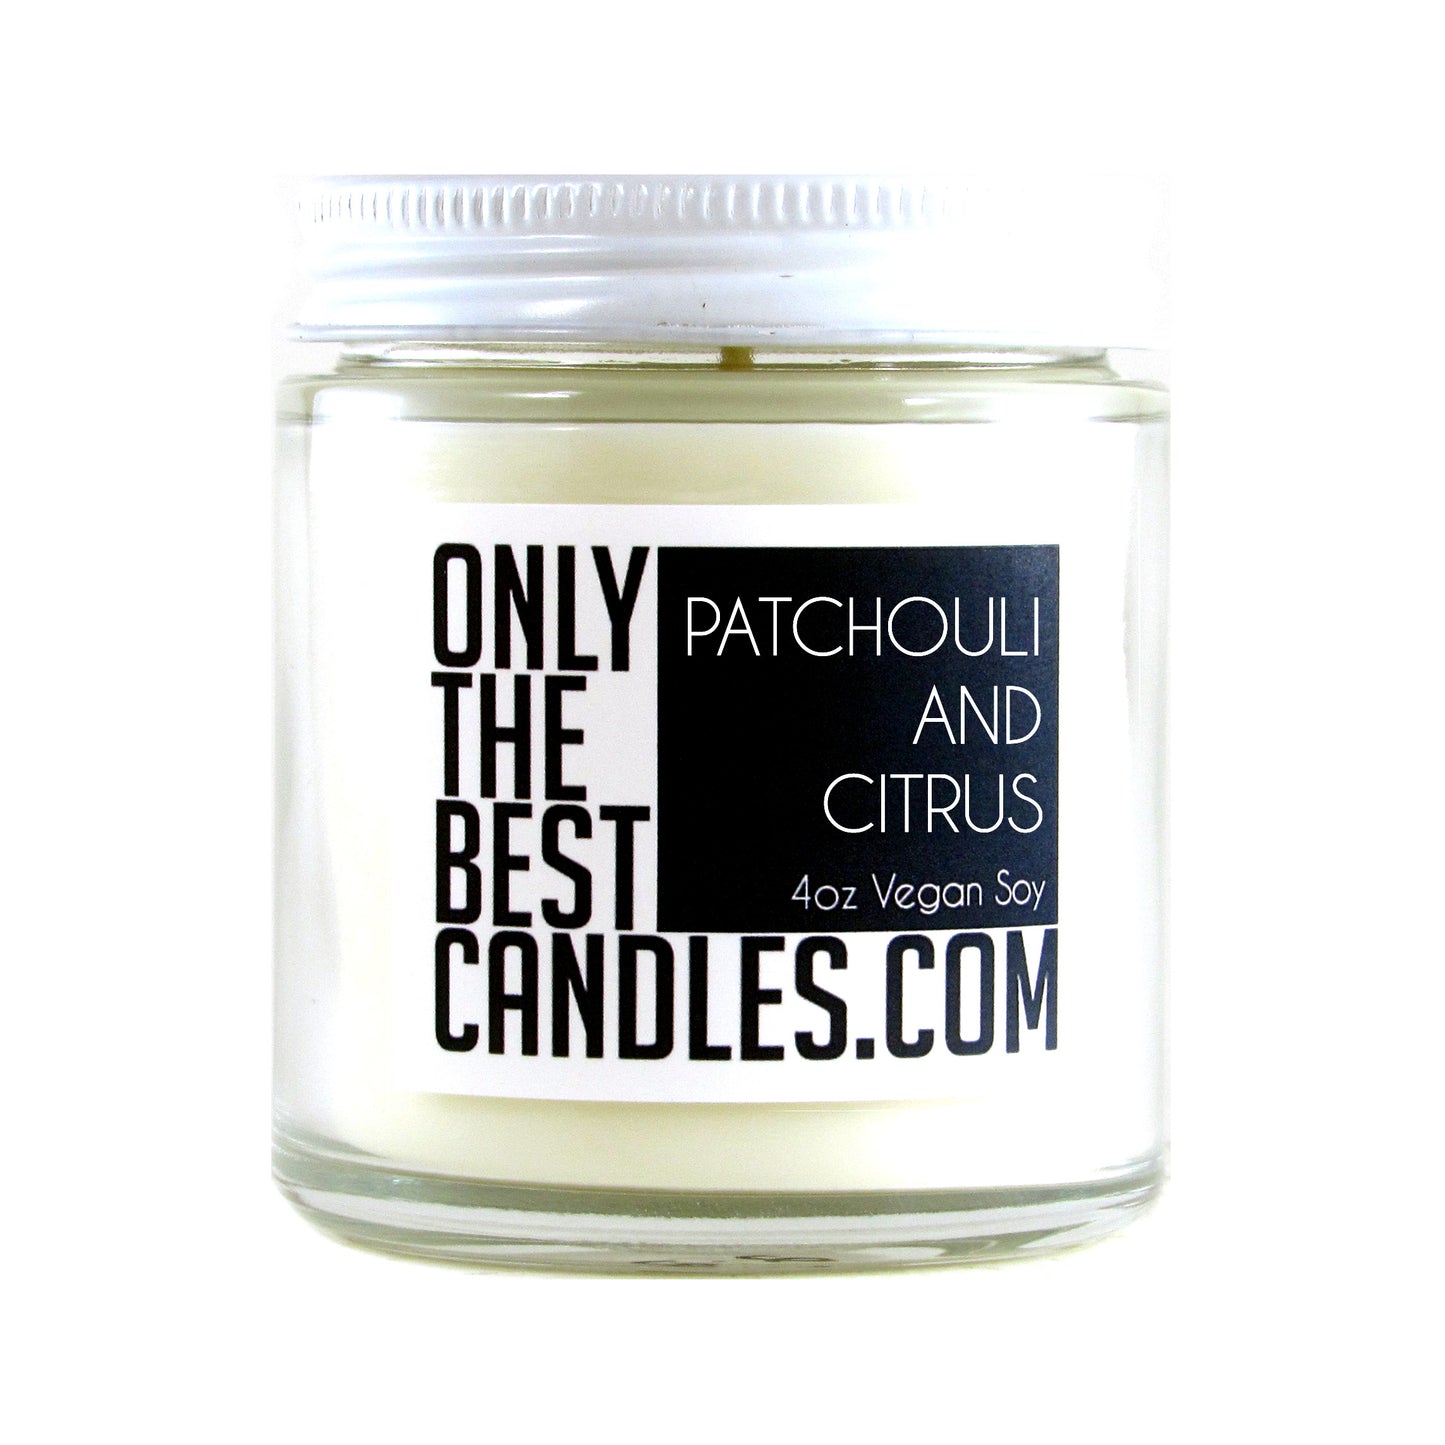 Patchouli and Citrus 4oz Candle